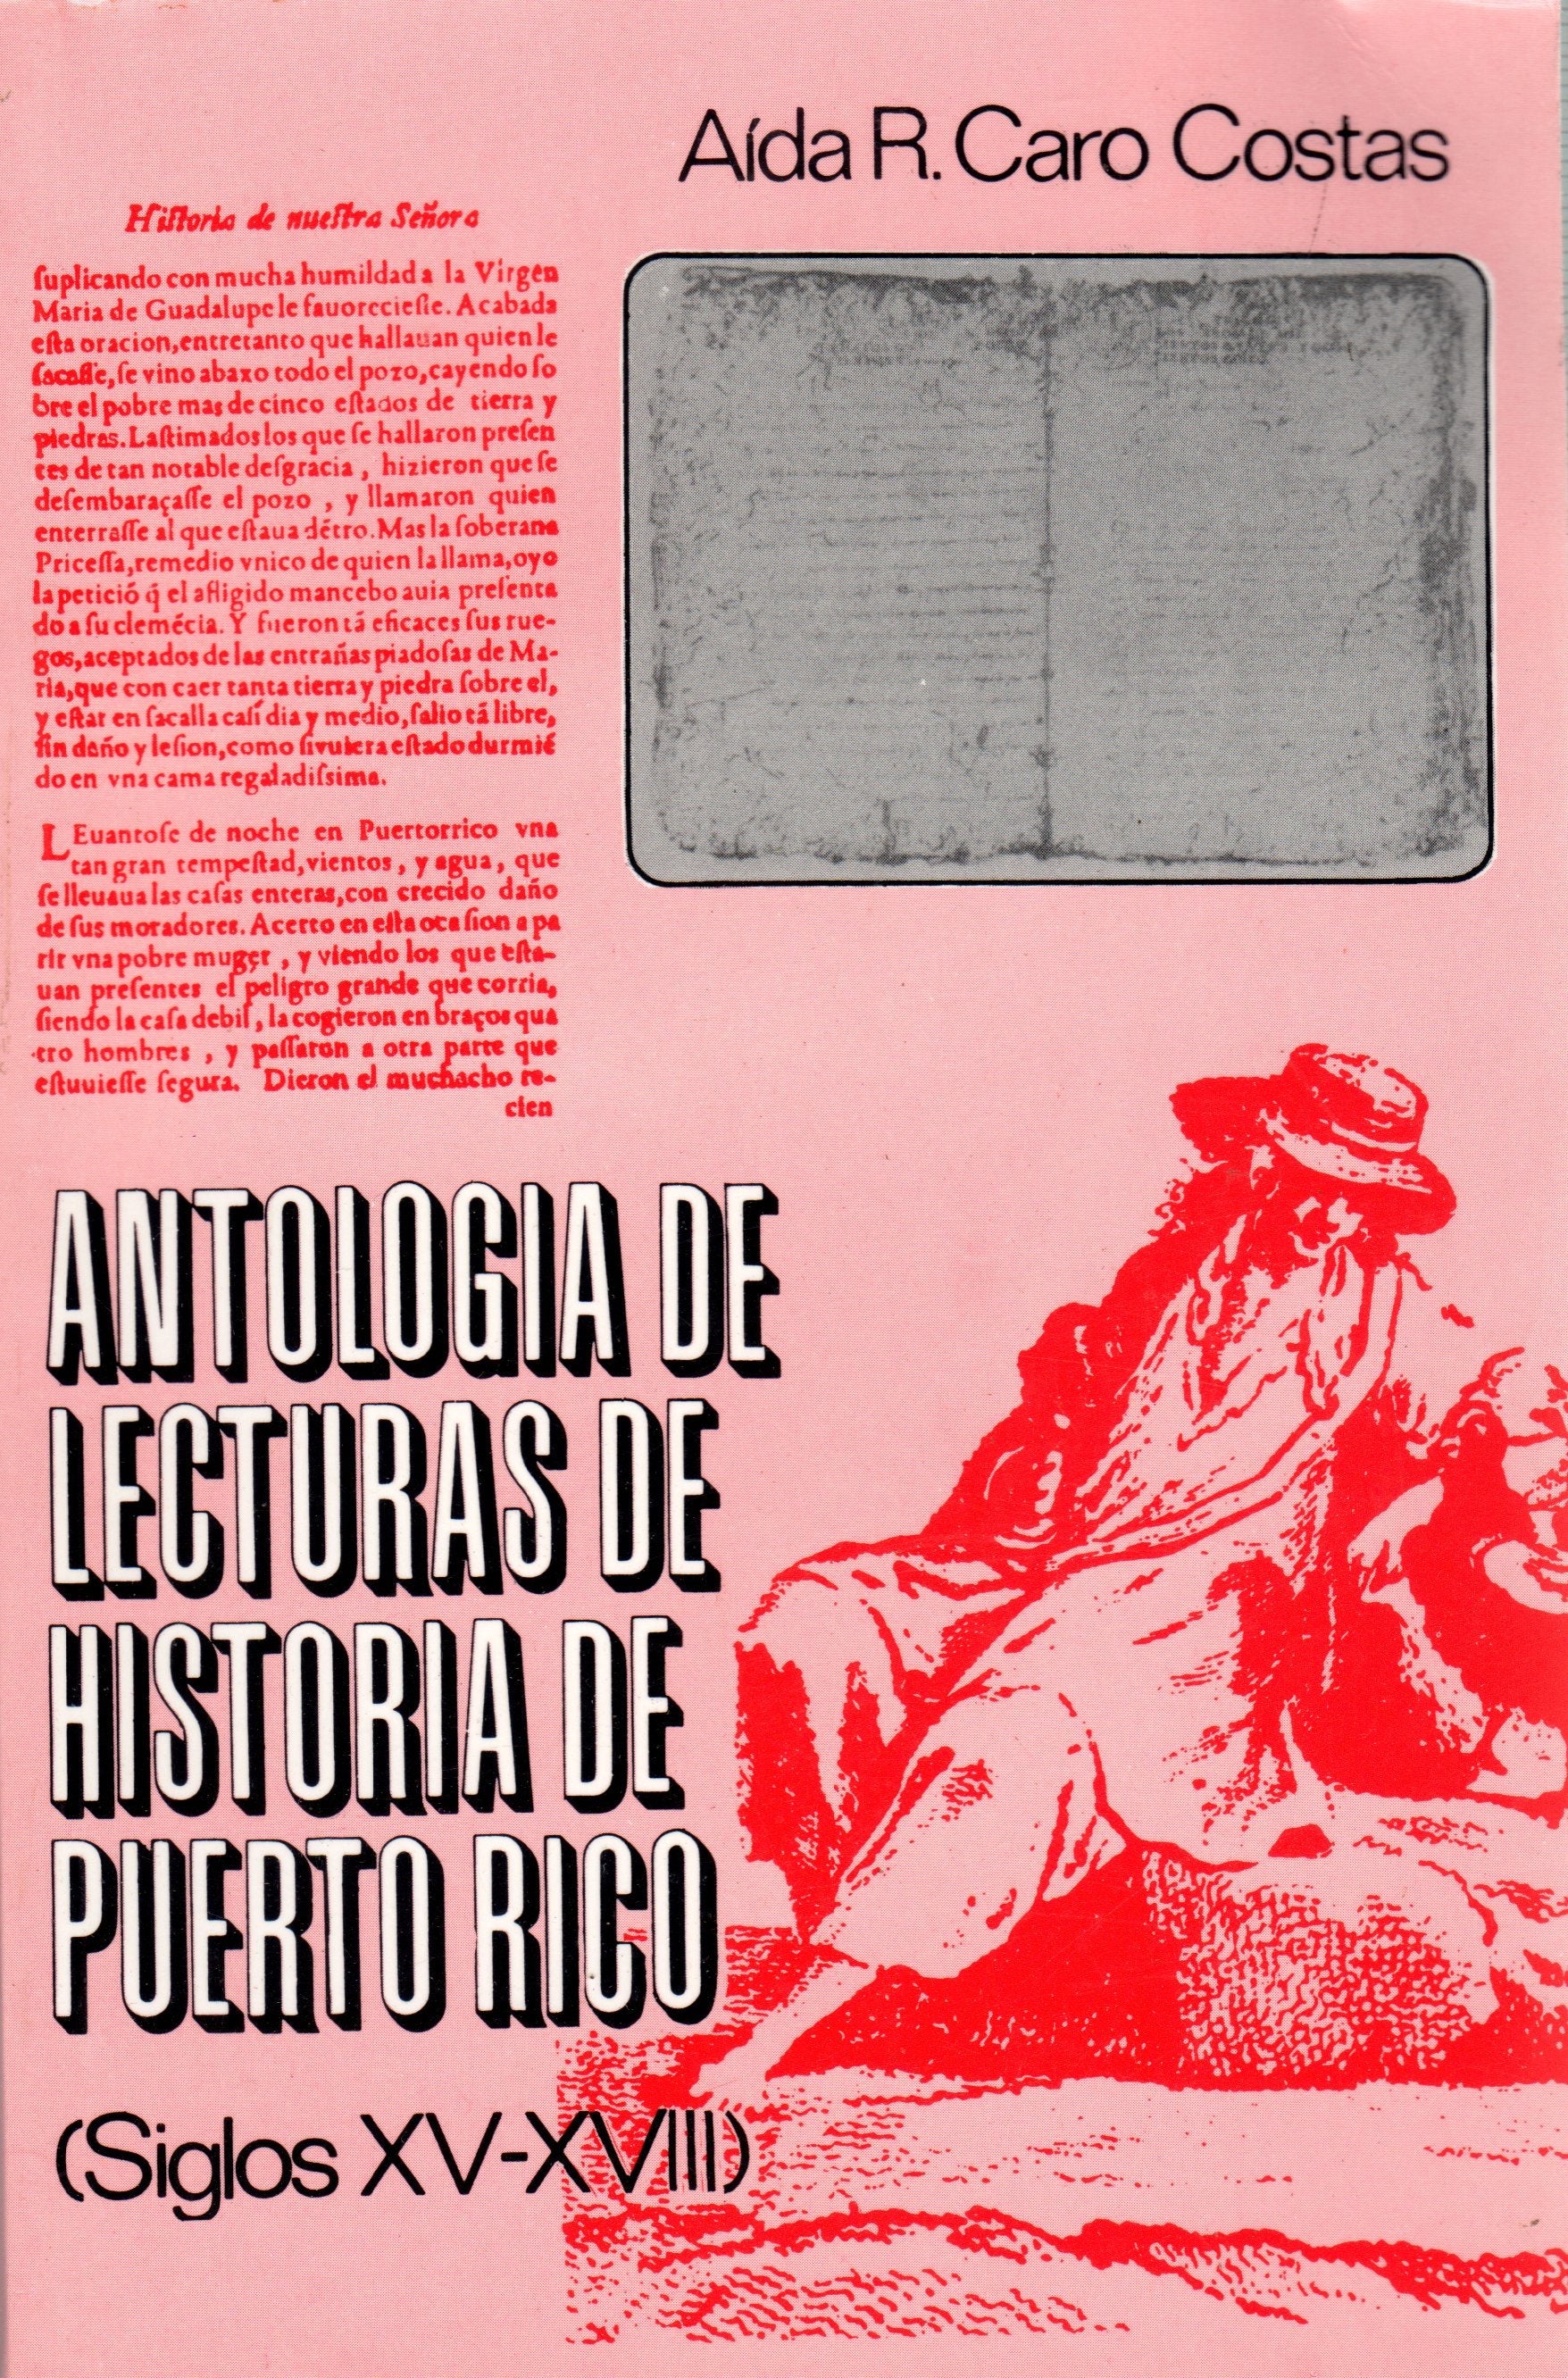 Antología de lecturas de historia de Puerto Rico: siglos XV-XVII